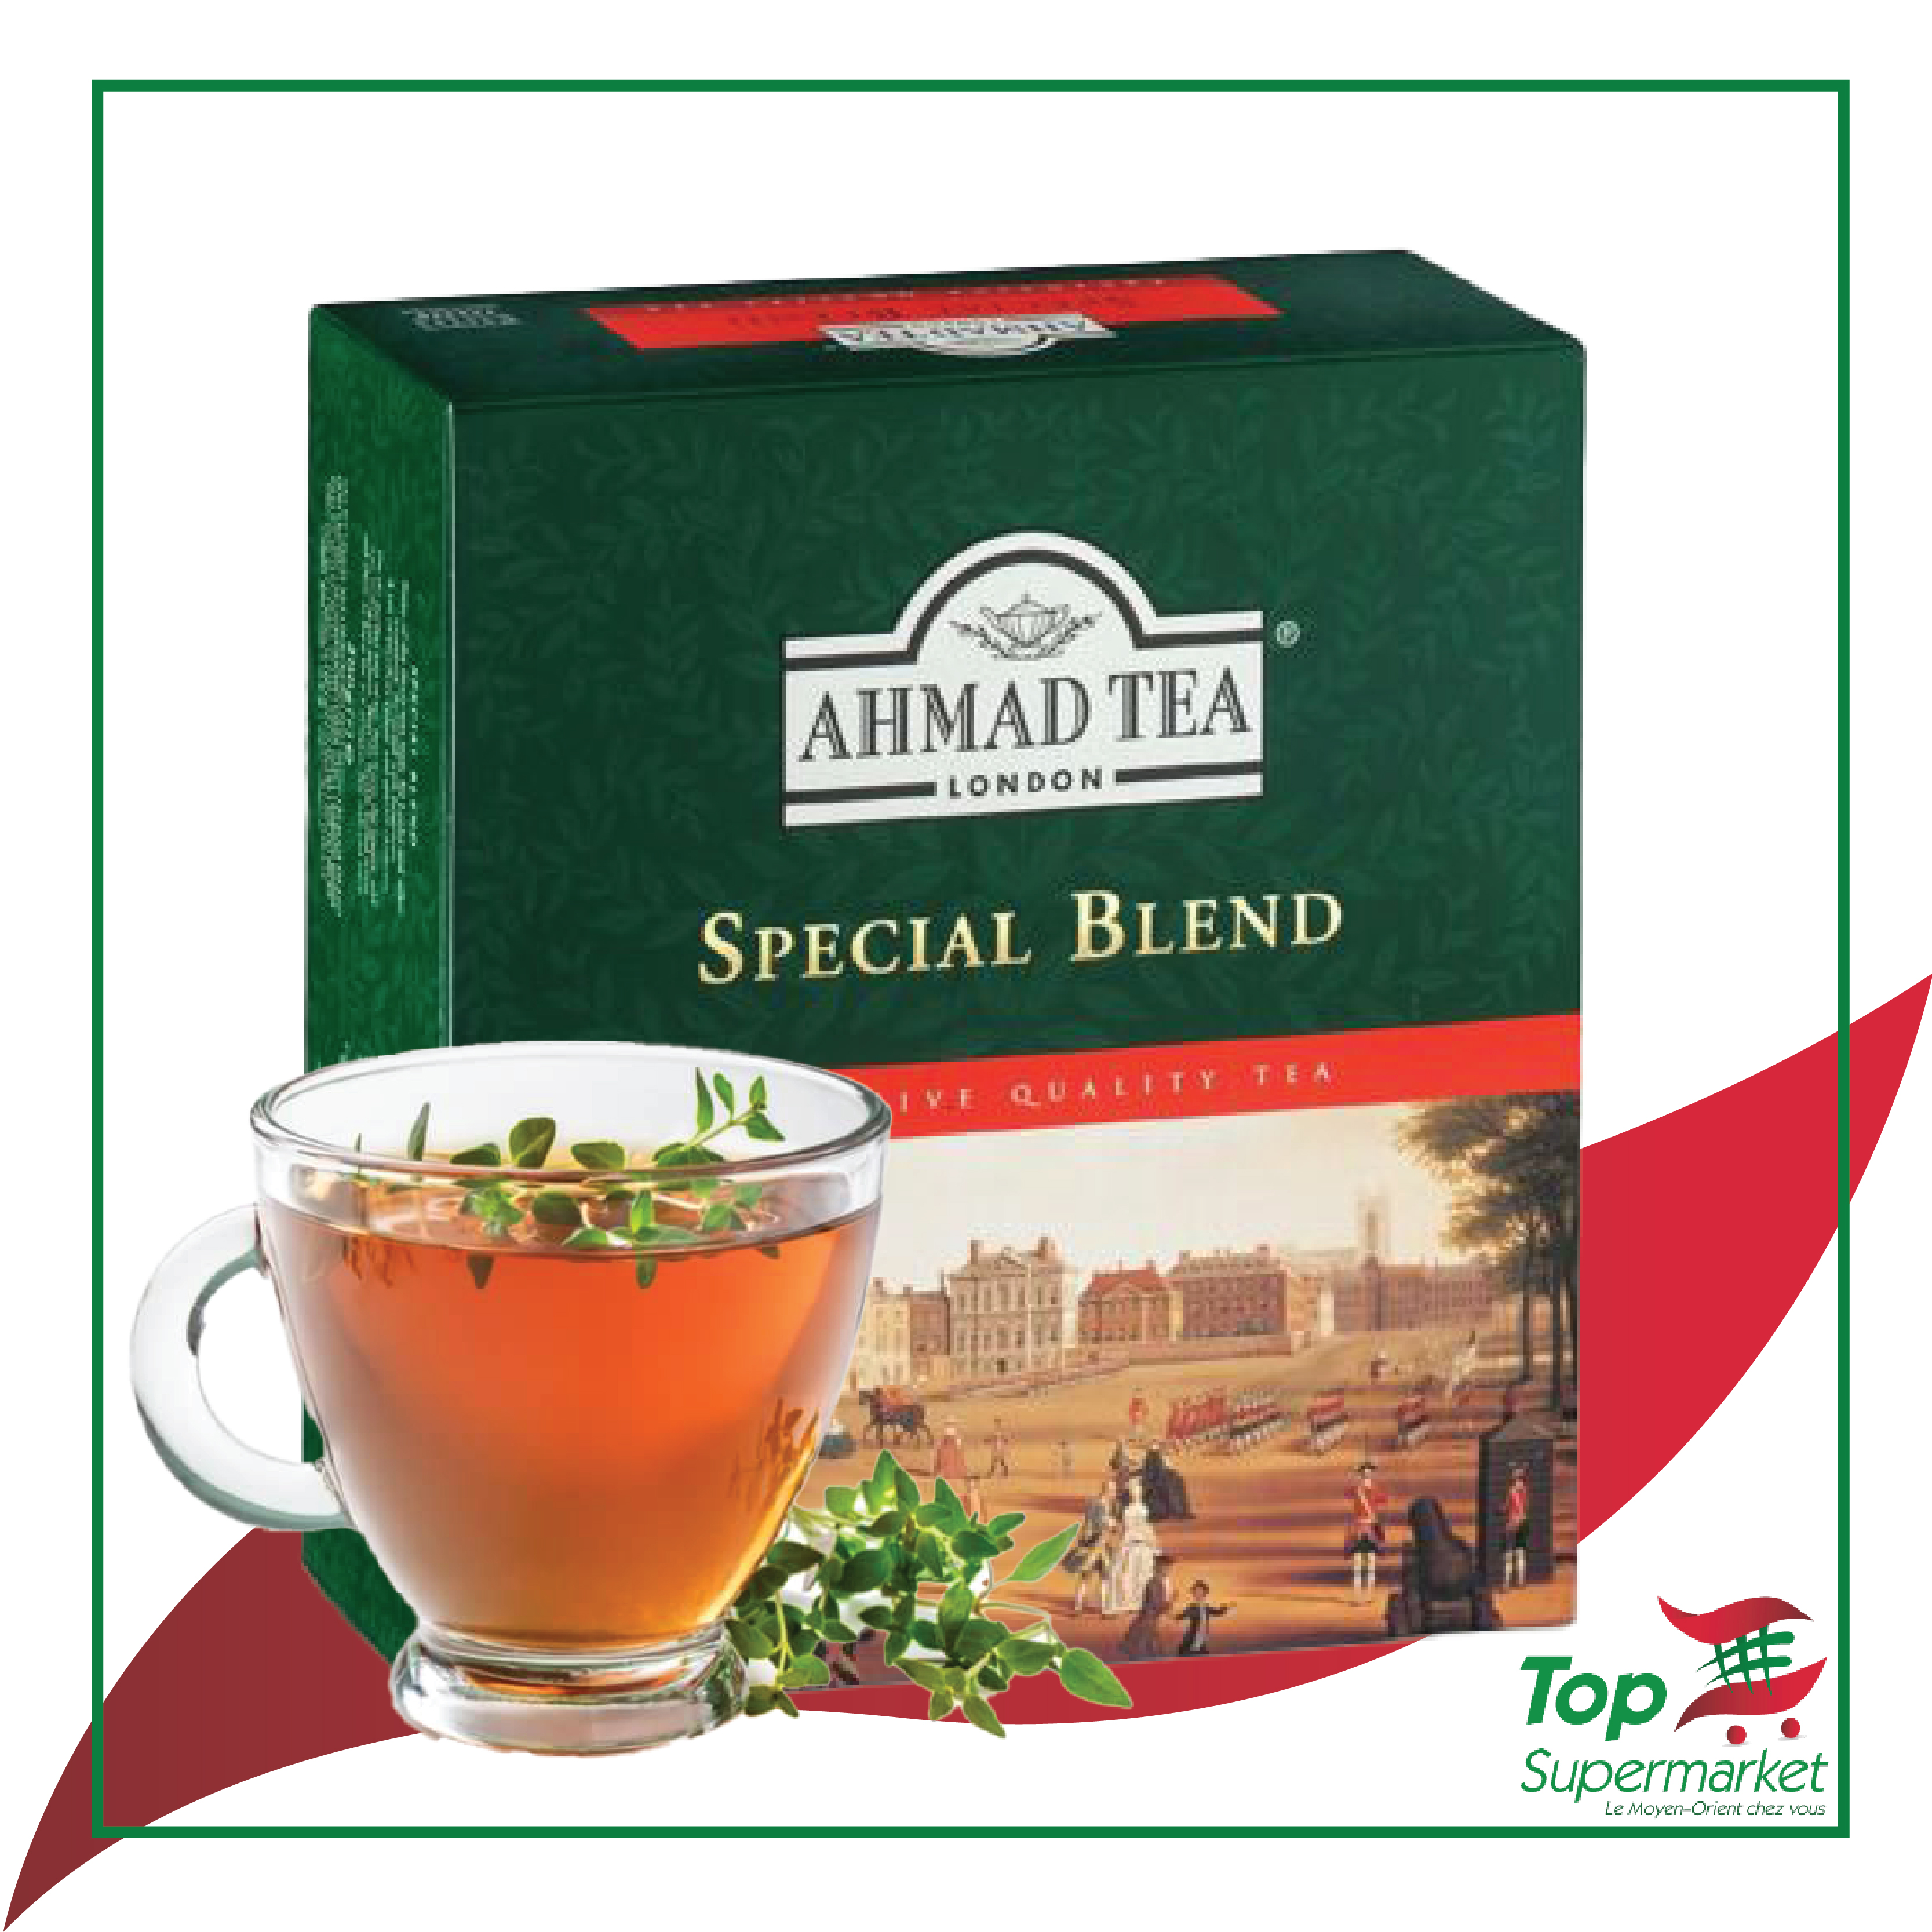 Ahmad Tea Spcial Blend x100 sachets